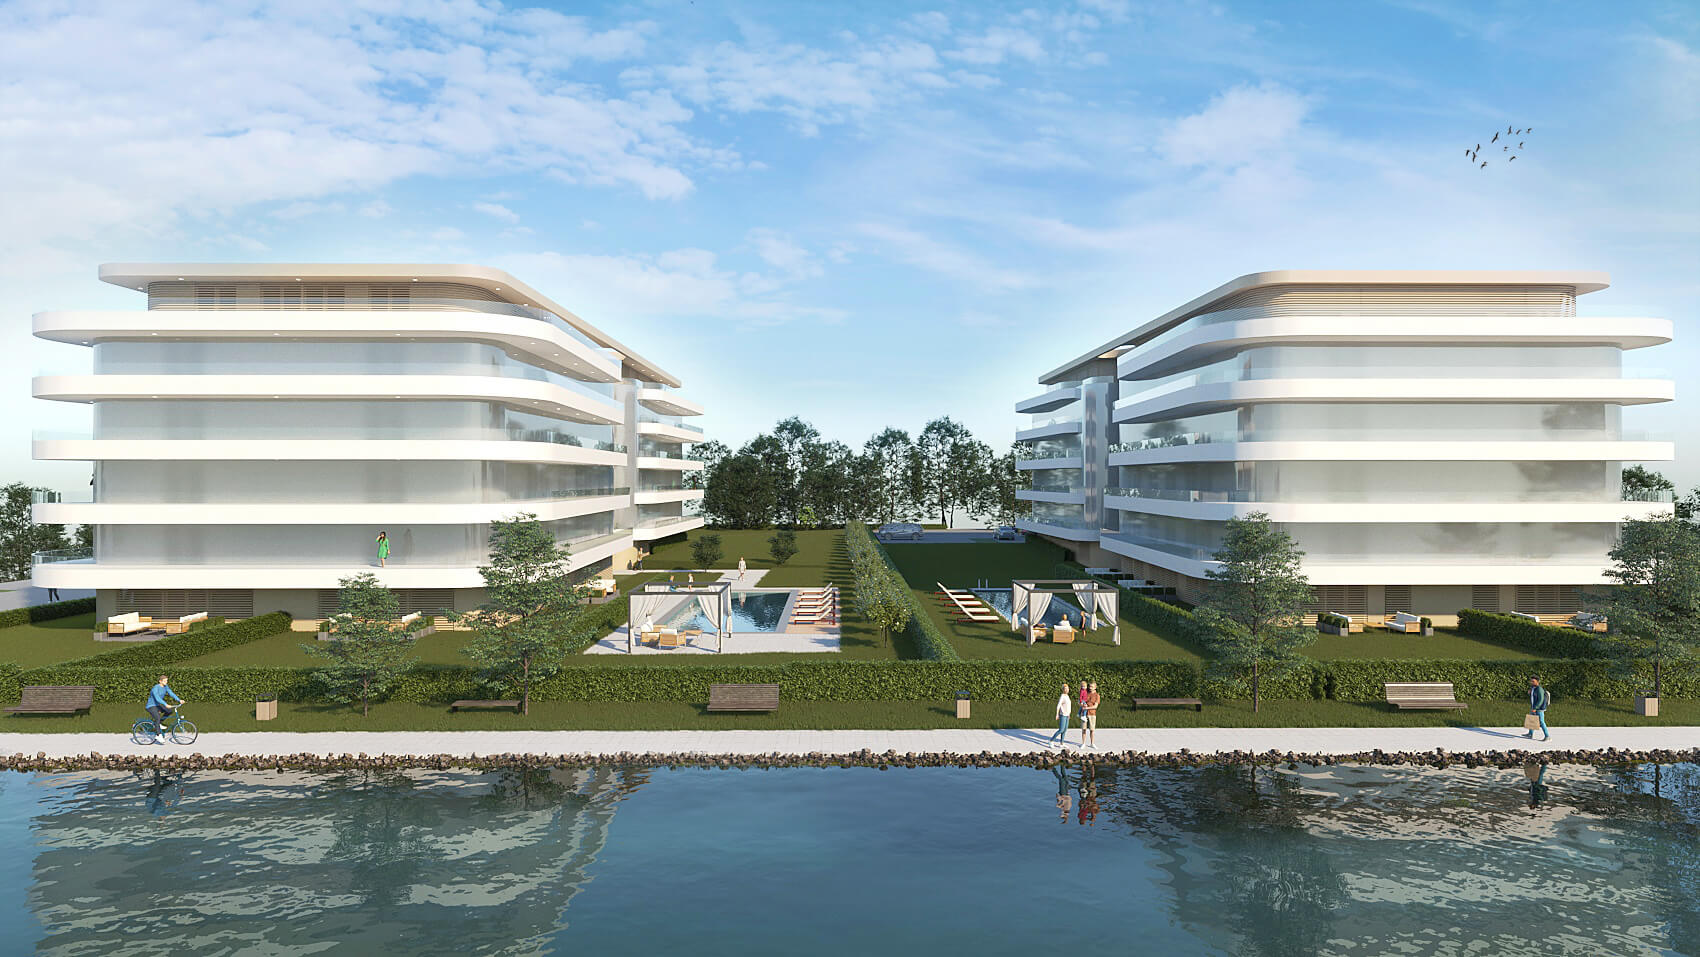 Te hallottál a Balaton-part egyik legújabb luxusberuházásáról? – Íme a Wave lakópark, egyenesen az Aranypartról